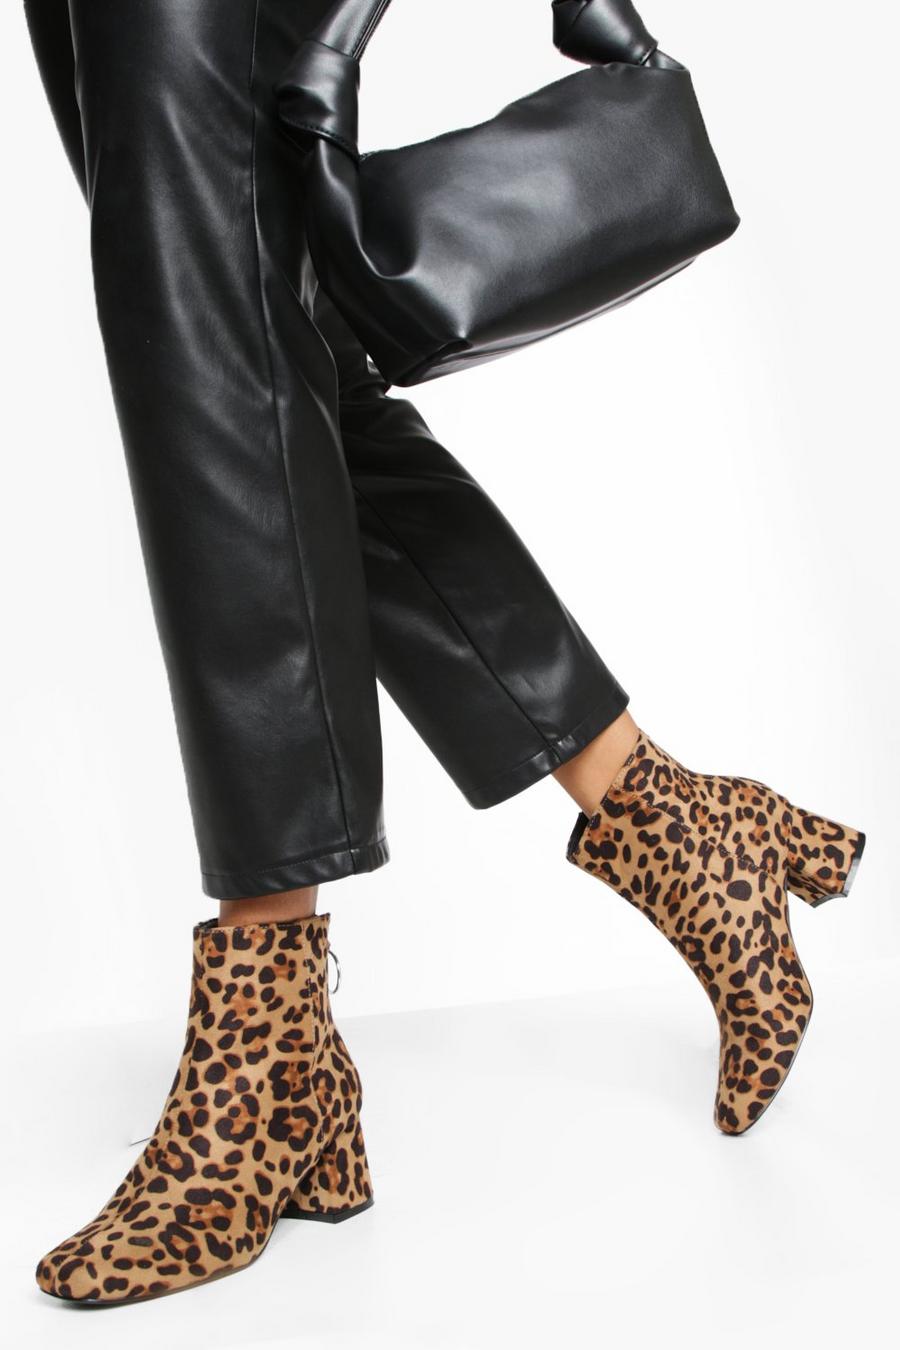 Los zapatos leopardo que no te pueden faltar